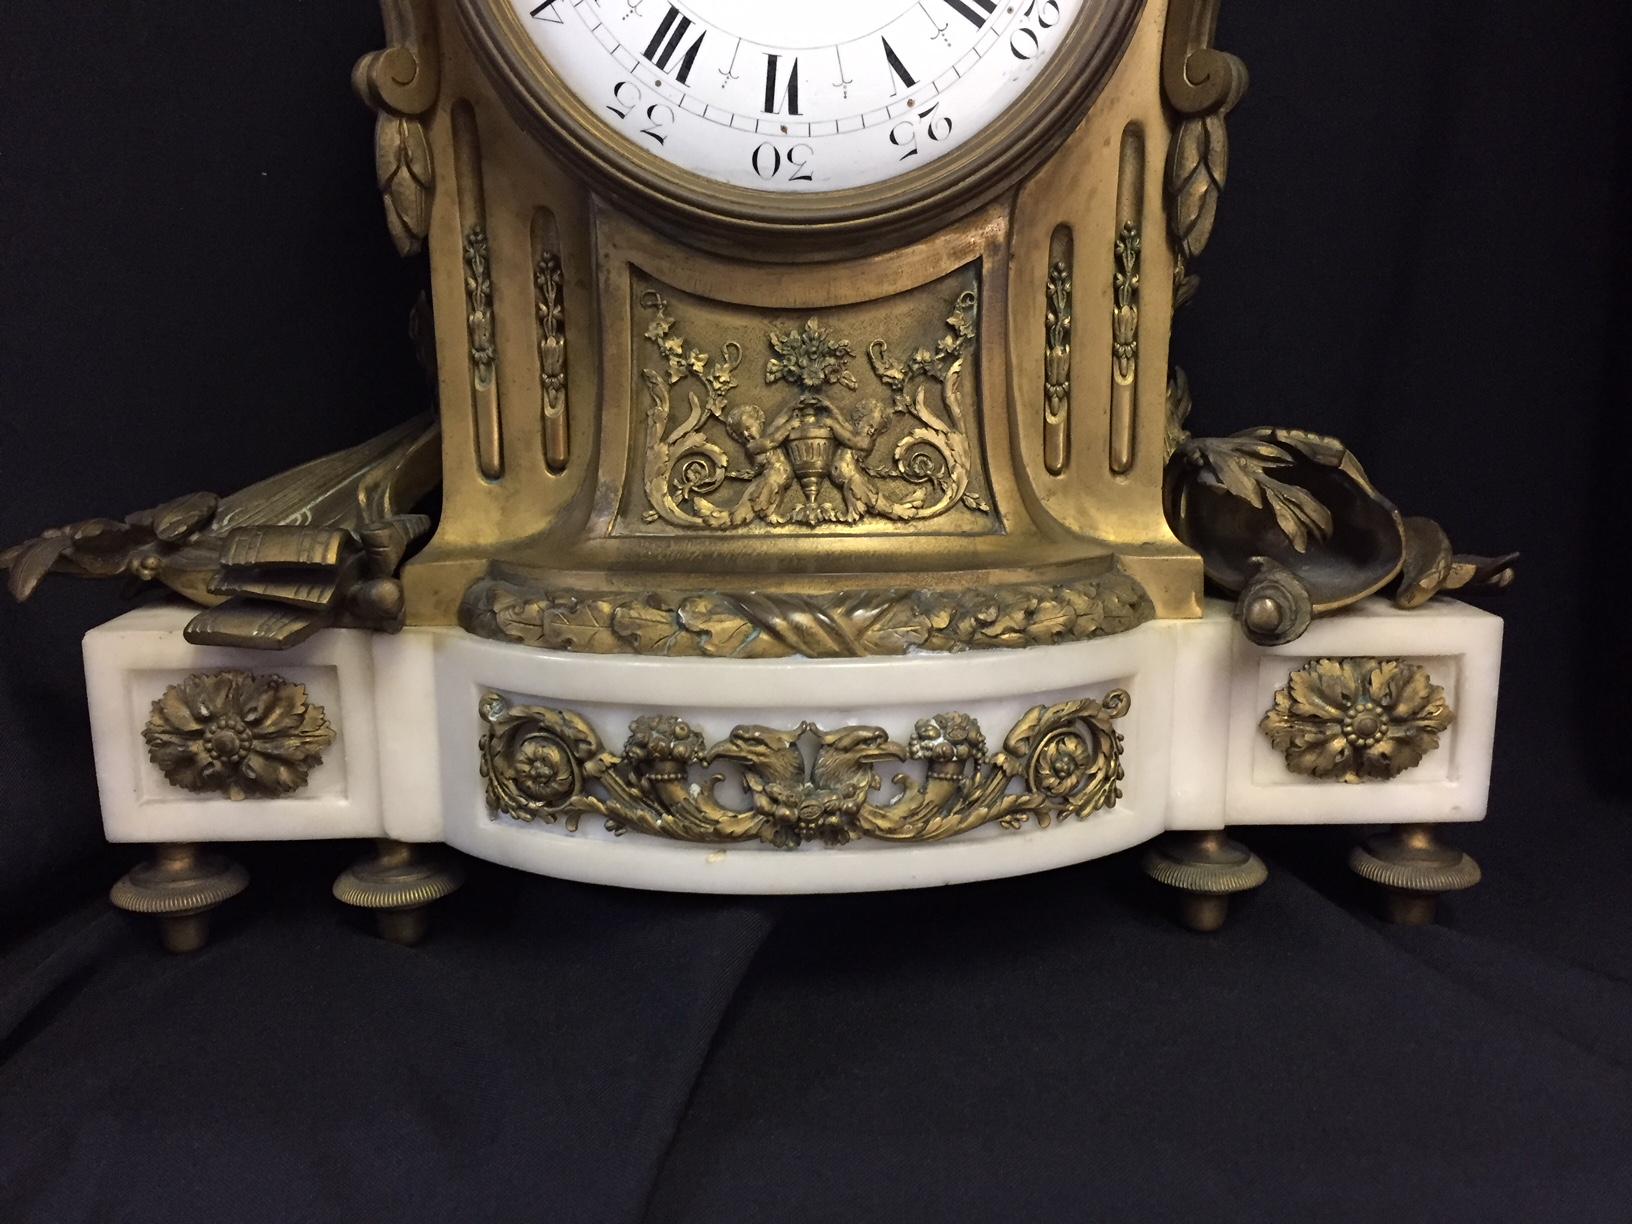 Remarquable pendule en marbre blanc de style Louis XVI du XIXe siècle, montée en bronze doré et ornée d'amours.
Retraité par Tiffany. 

L'horloge est surmontée de deux amoureux s'embrassant parmi des feuillages et des guirlandes florales